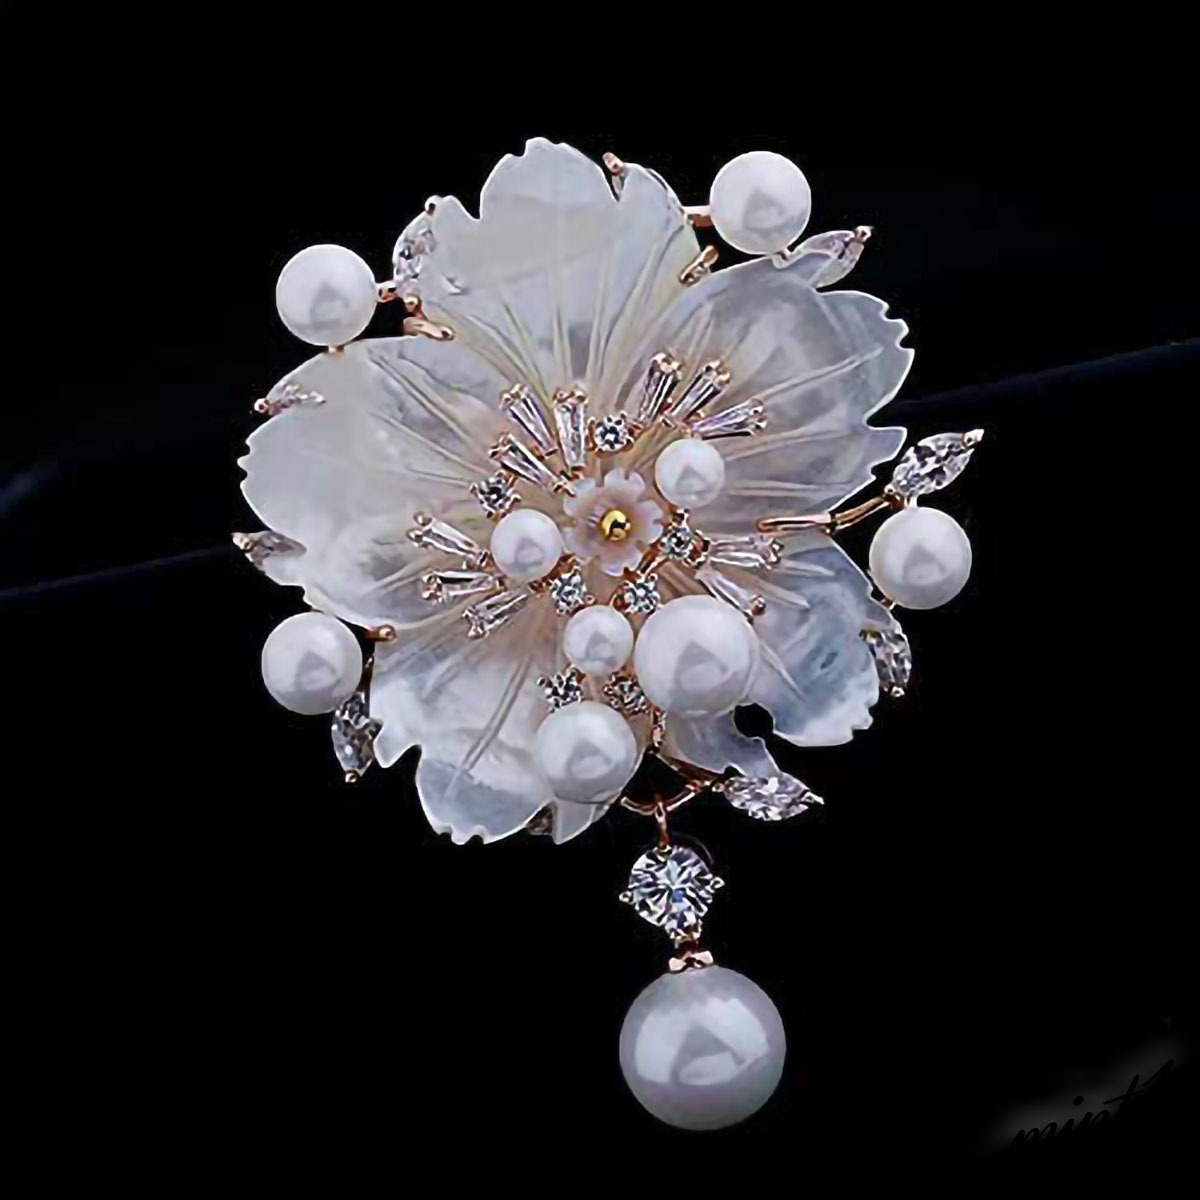 ◆上品な色合い◆ ブローチ 真珠 アクセサリー スワロフスキージルコニア 花束モチーフ フォーマル オシャレ 高級感 カバン 帽子